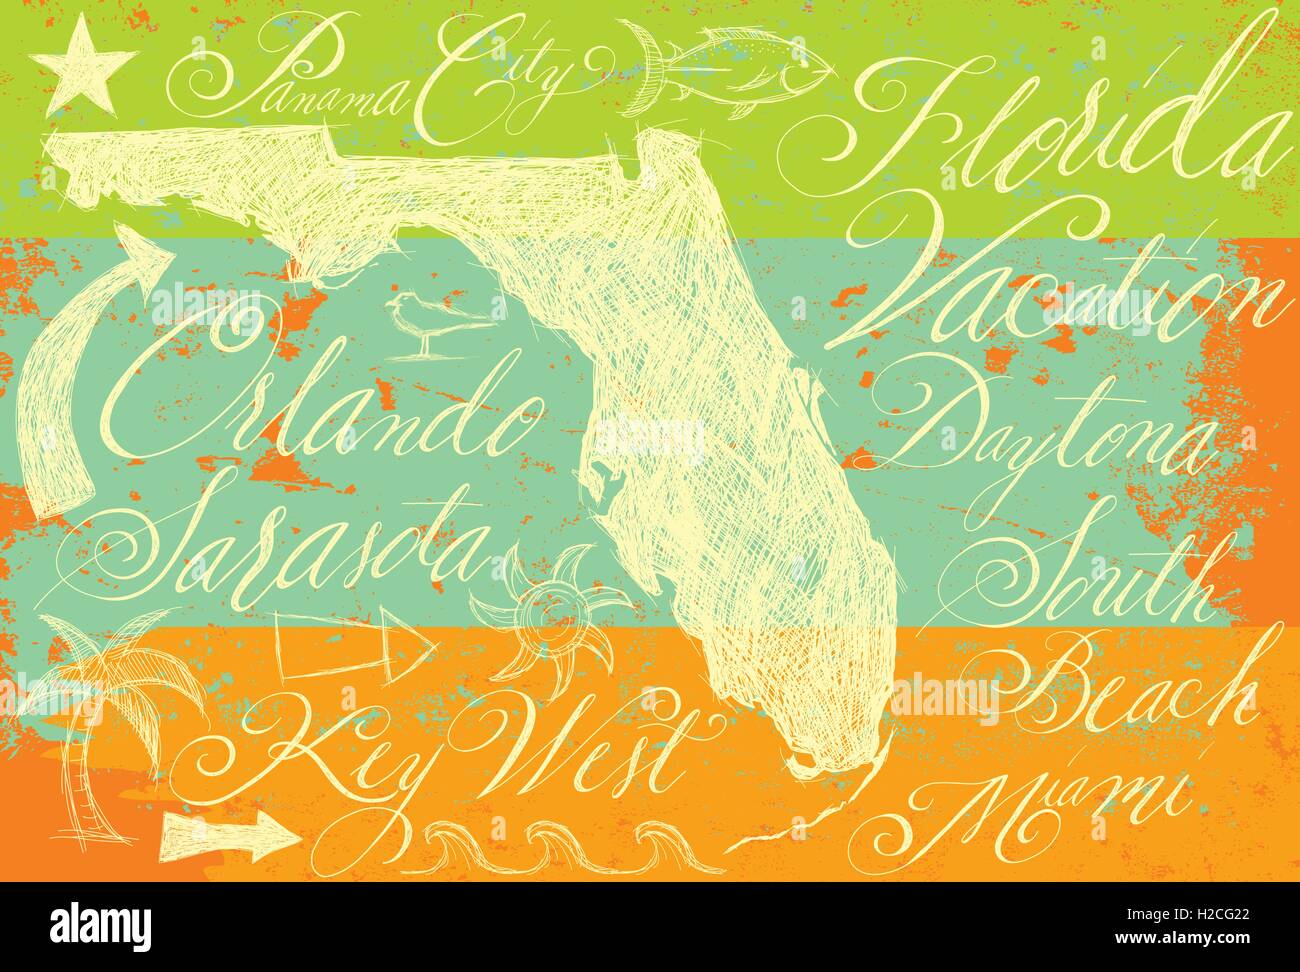 Florida scarabocchi con la calligrafia disegnati a mano stato della Florida con altri scarabocchi e calligrafia manoscritta di vacanza popolare Illustrazione Vettoriale